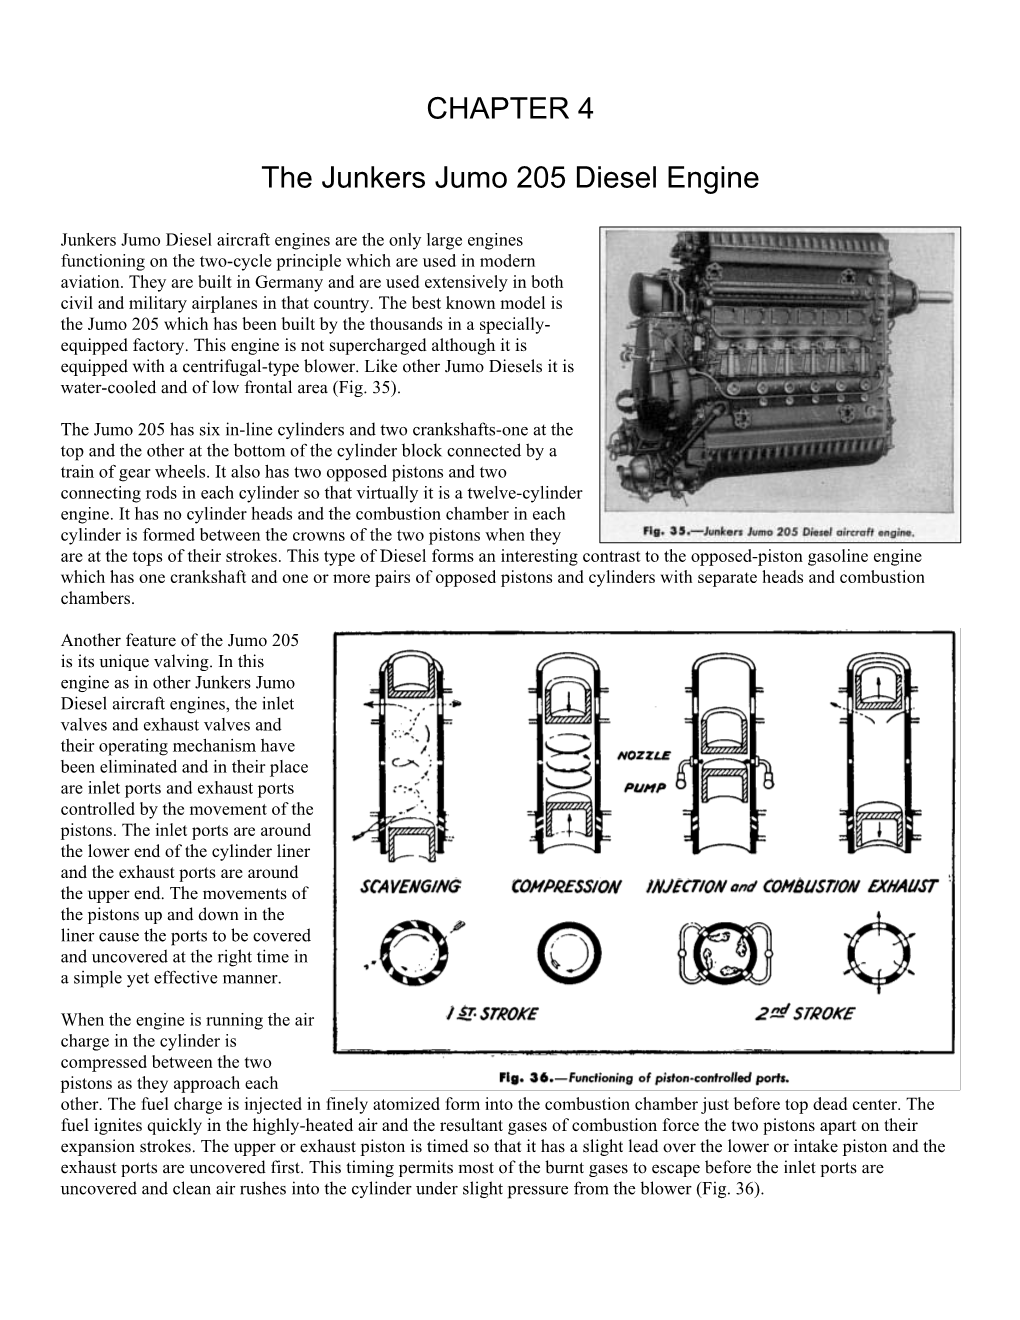 CHAPTER 4 the Junkers Jumo 205 Diesel Engine